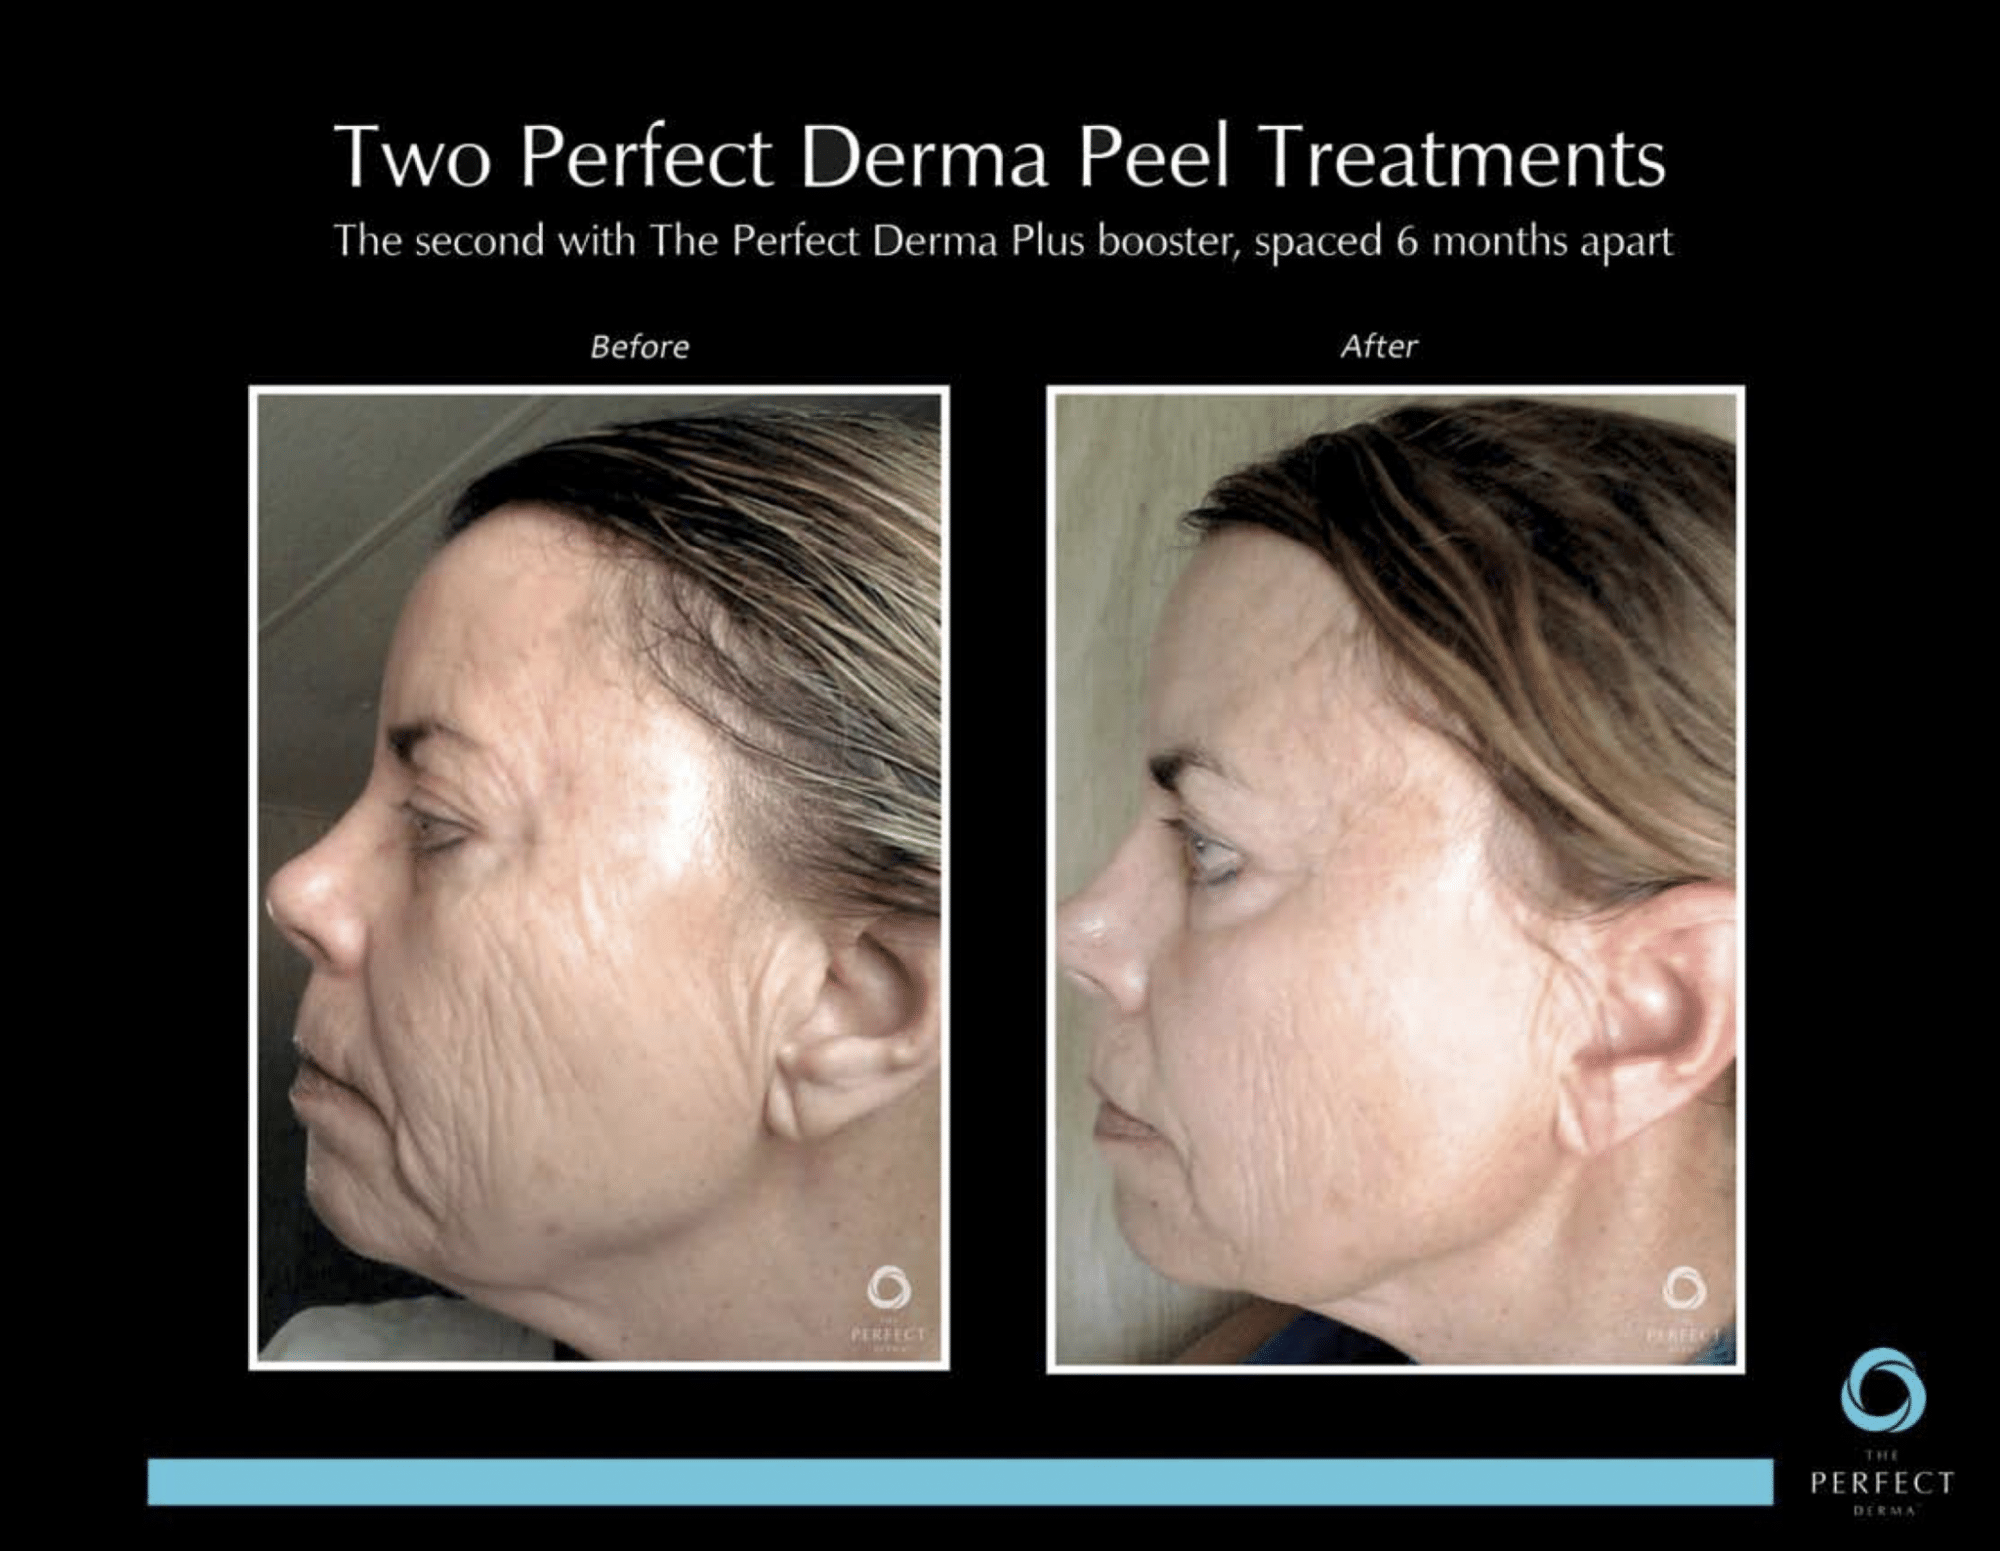 Before & After derma peel